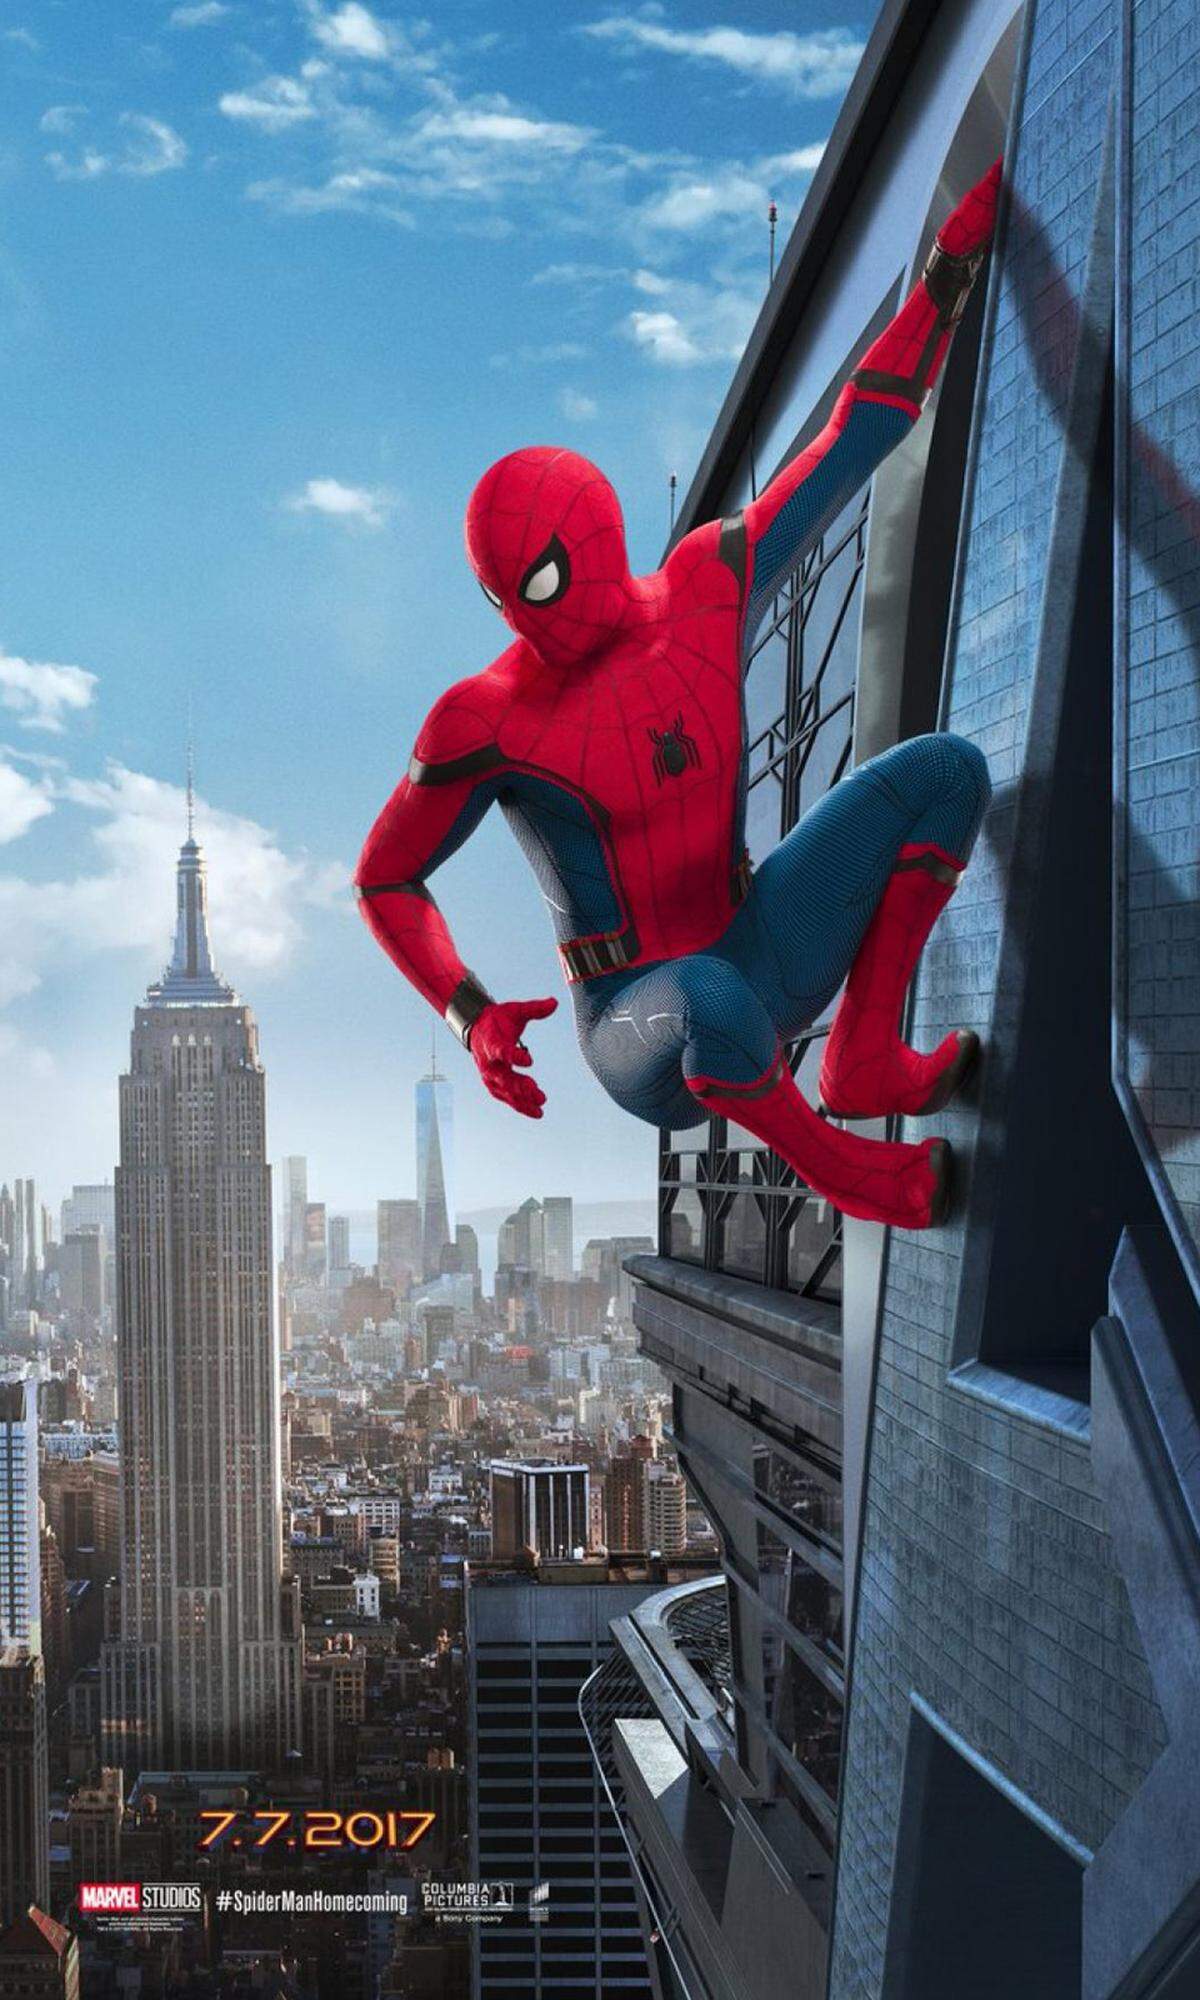 Reboots stehen in Hollywood nach wie vor hoch im Kurs. Es ist trotzdem frappant, dass es nun einen weiteren Spider-Man-Neustart gibt: Die letzte Neuverfilmung liegt erst wenige Jahre zurück. Marc Webbs Filme (2012, 2014), vor allem Teil 2, konnten nicht allzu überzeugen. Zuvor lieferte Sam Raimi zu 2/3 eine gute Spinnenmann-Trilogie (2002 - 2007) ab. Nun folgt "Spider-Man: Homecoming" (Regie: Jon Watts; Kinostart: 14. Juli), der erste Solofilm der "Spinne" im Marvel Universum. Doch alles der Reihe nach: Text: mtp